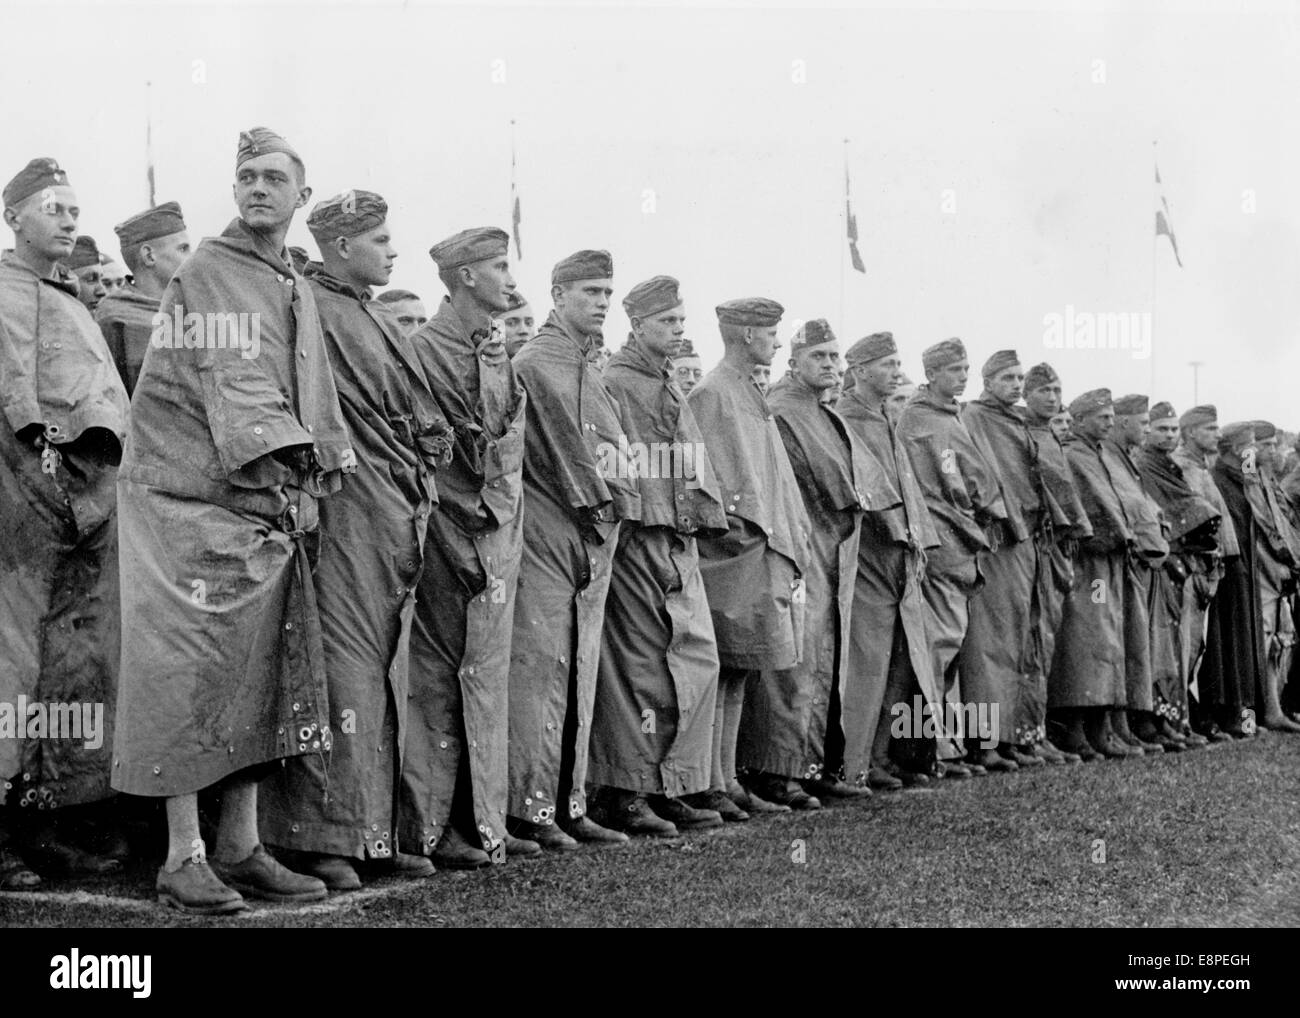 Mitglieder des HJ (Hitlerjugend) während eines Appells am "Tag der Hitlerjugend" auf dem Nazi-Parteigelände in Nürnberg. Datum unbekannt. Fotoarchiv für Zeitgeschichtee – KEIN KABELDIENST – Stockfoto